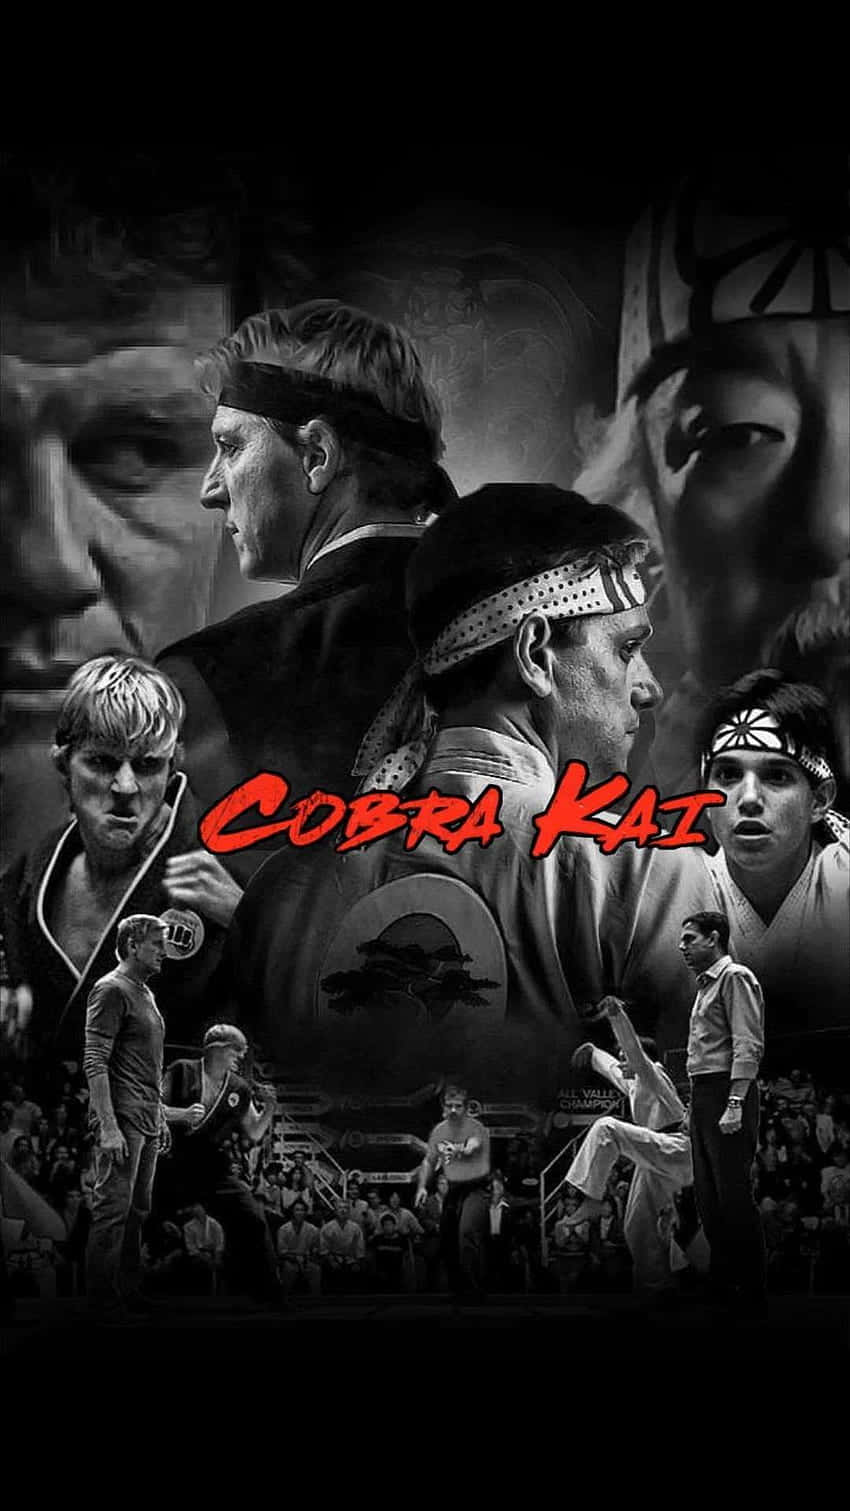 Cobrakai Iphone Xr Karate Kid Bakgrundsbild.